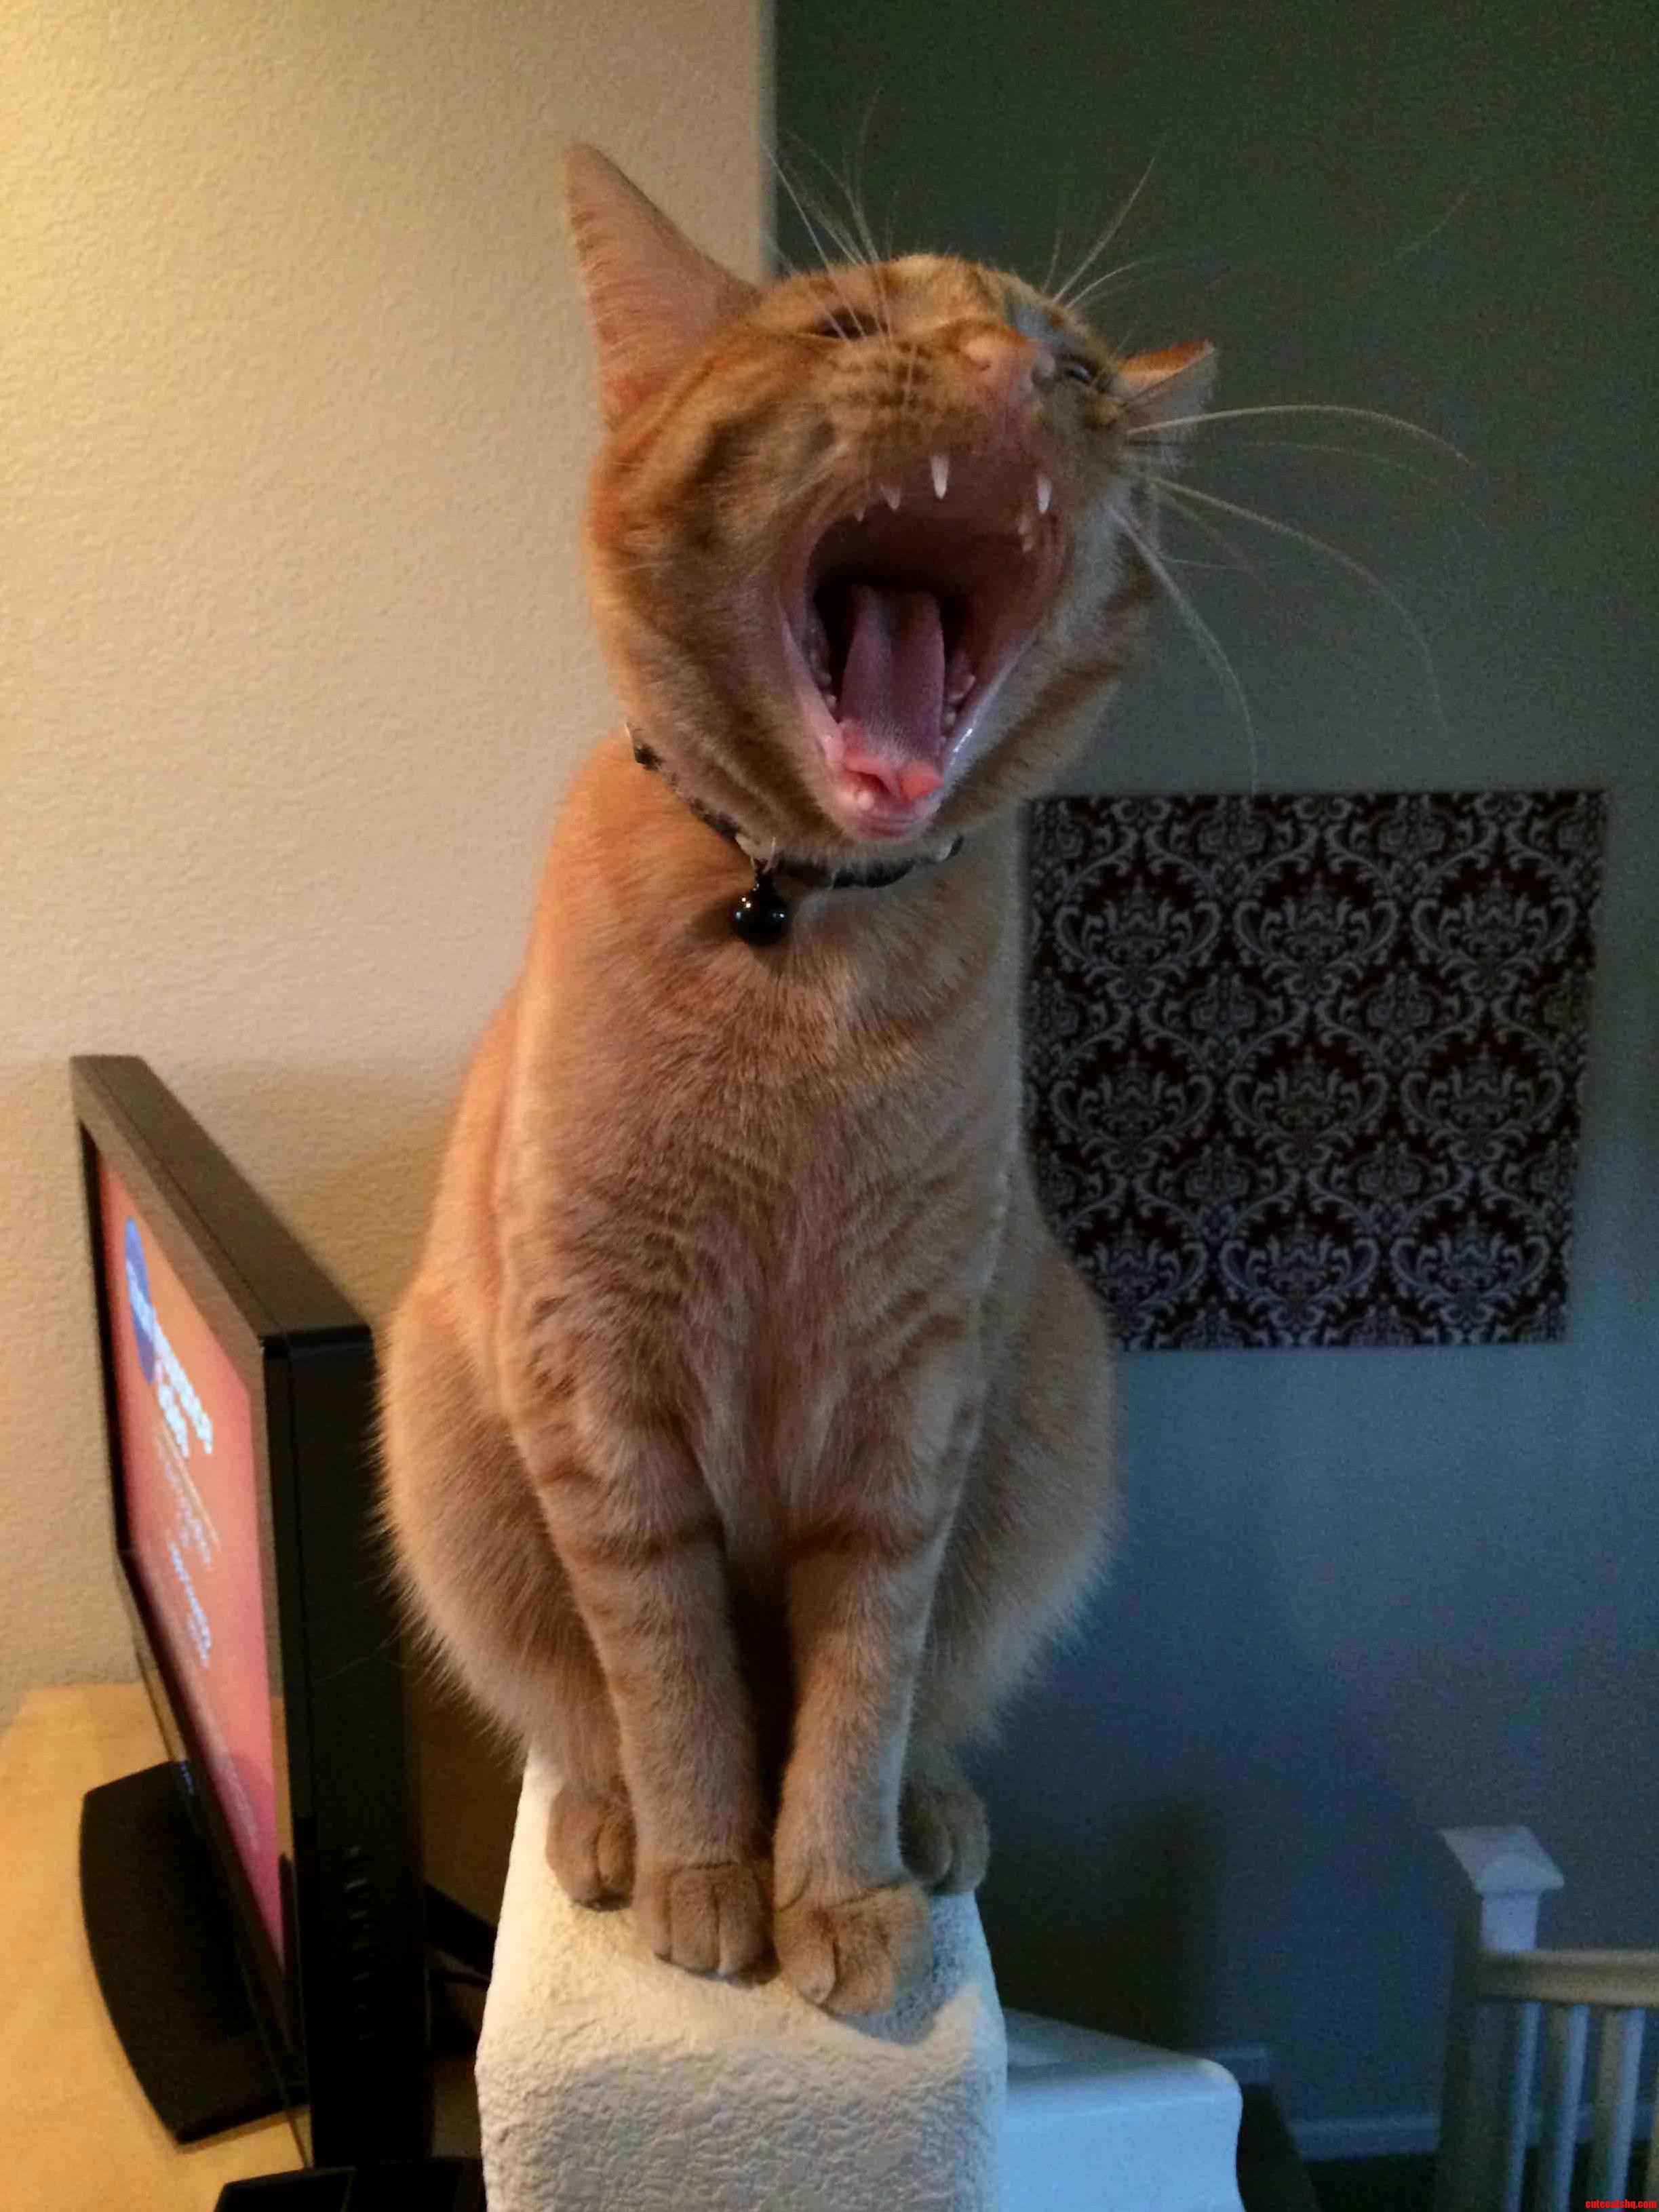 I Love When She Yawns